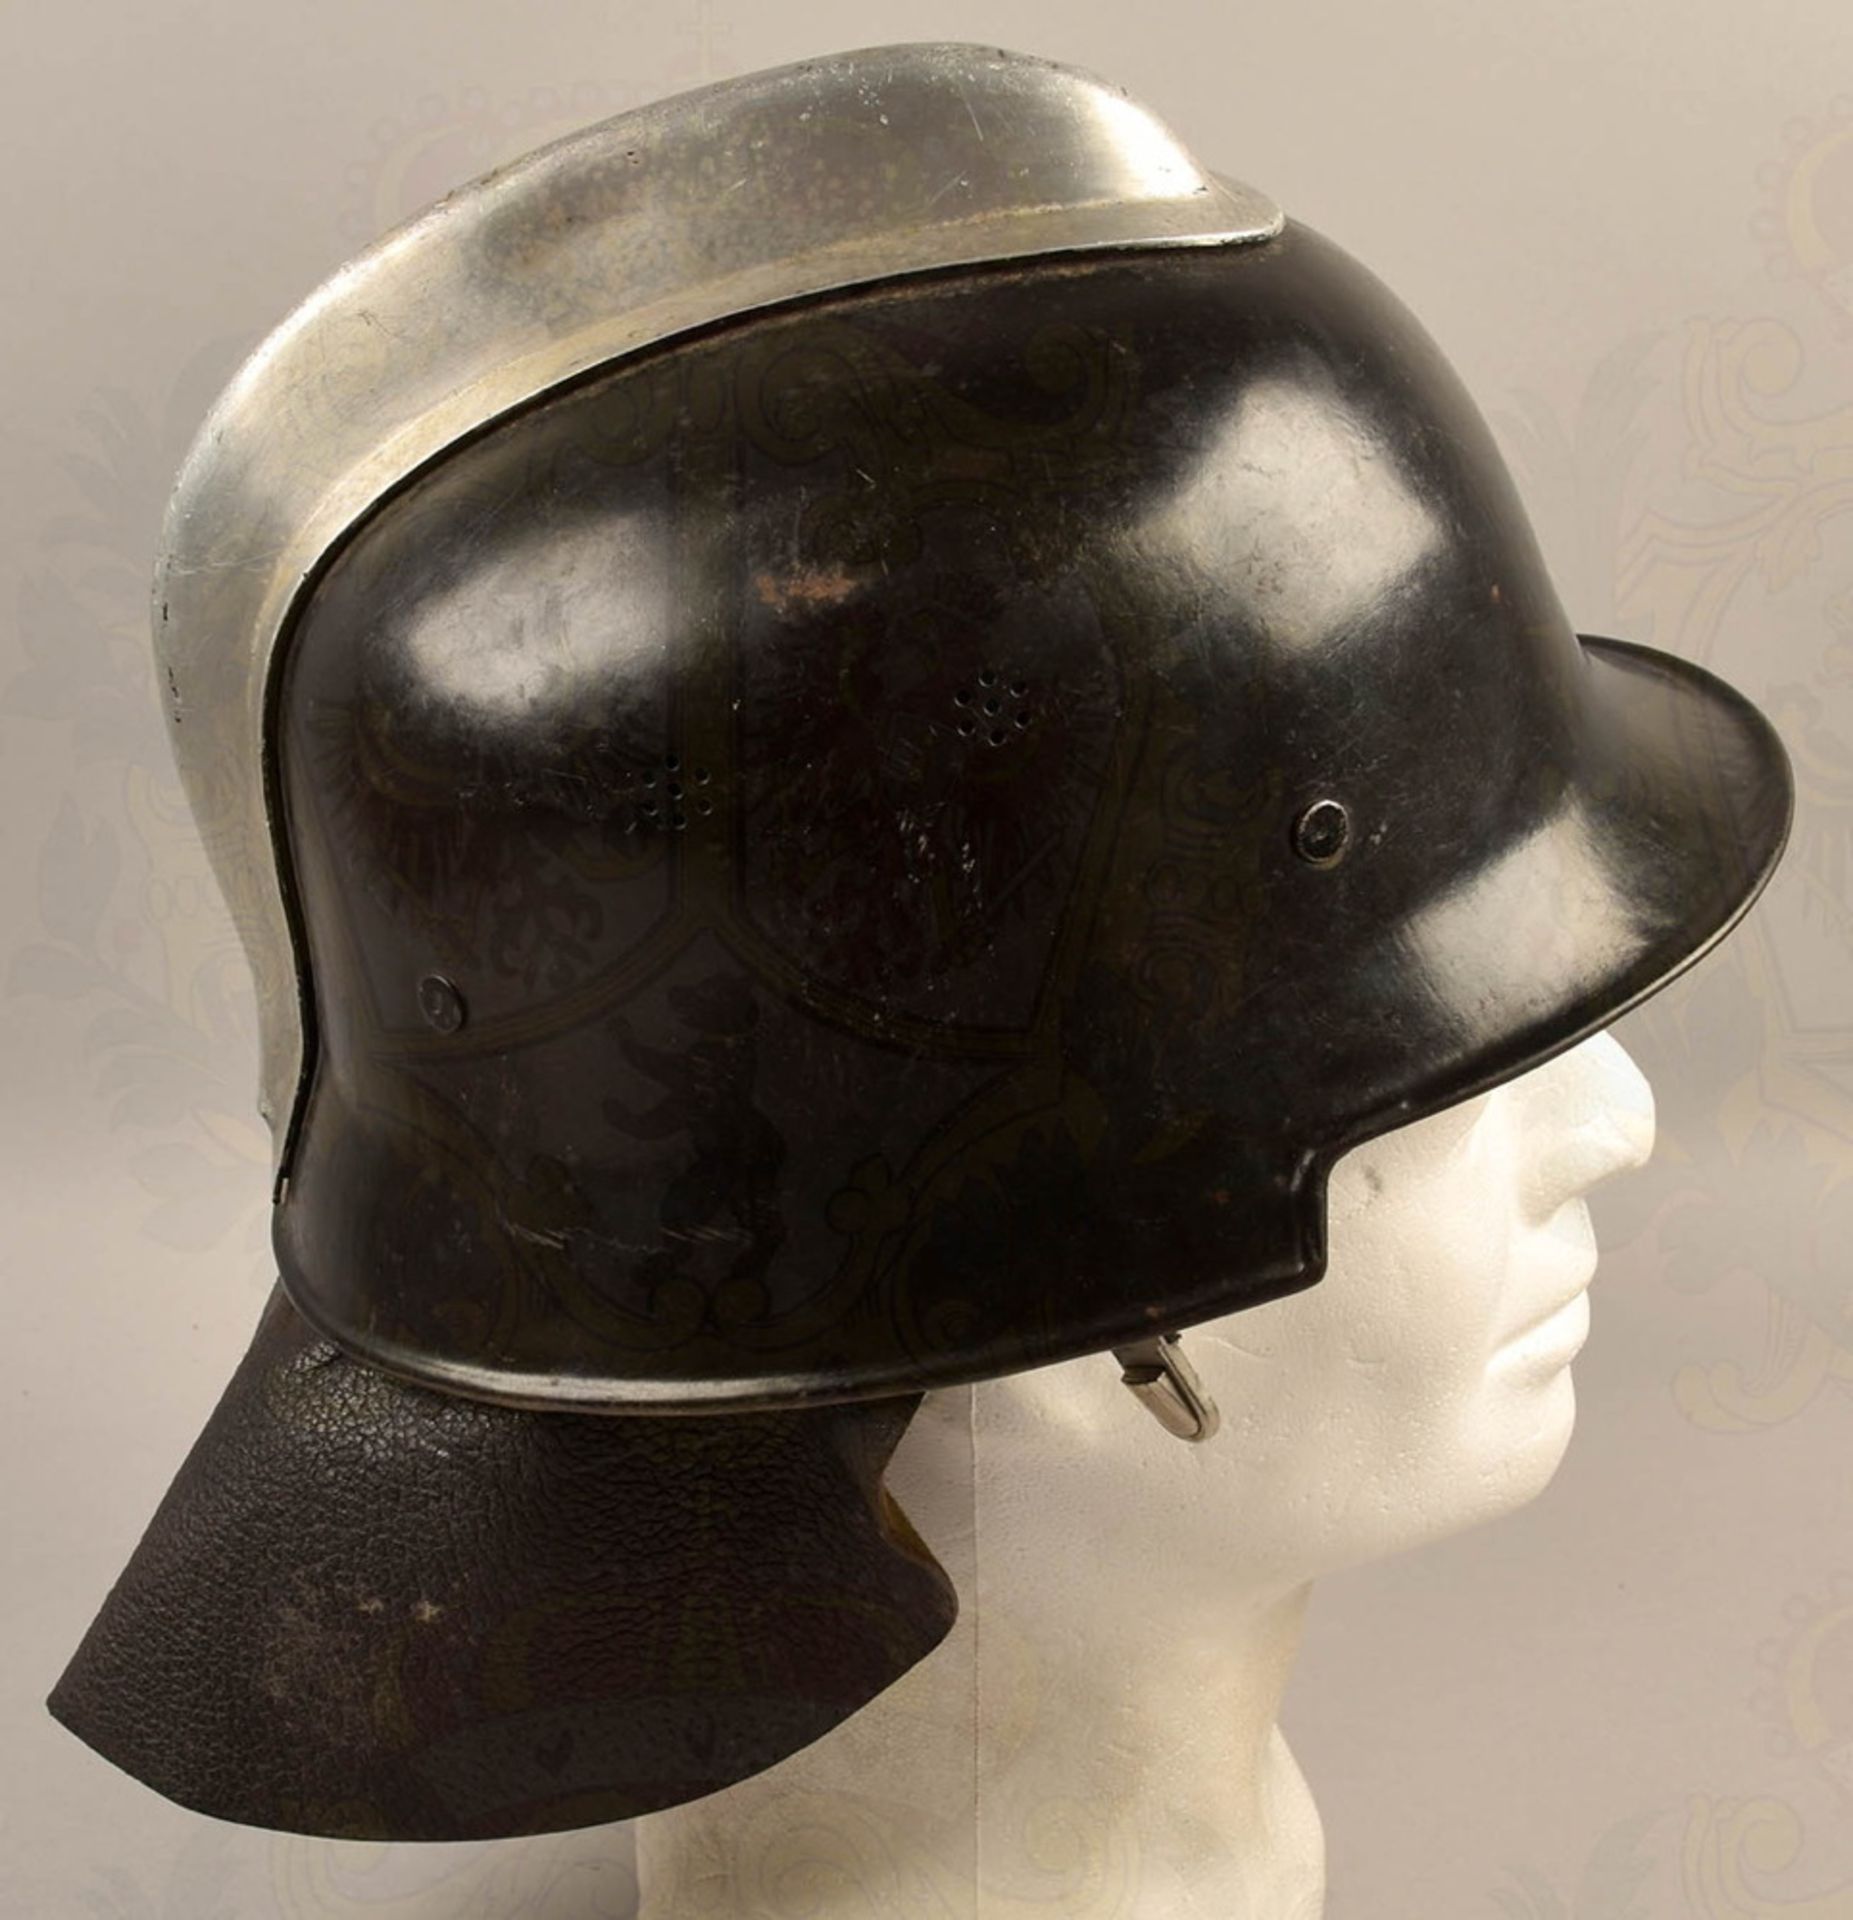 Fire brigade steel helmet pattern 1934 - Image 2 of 5